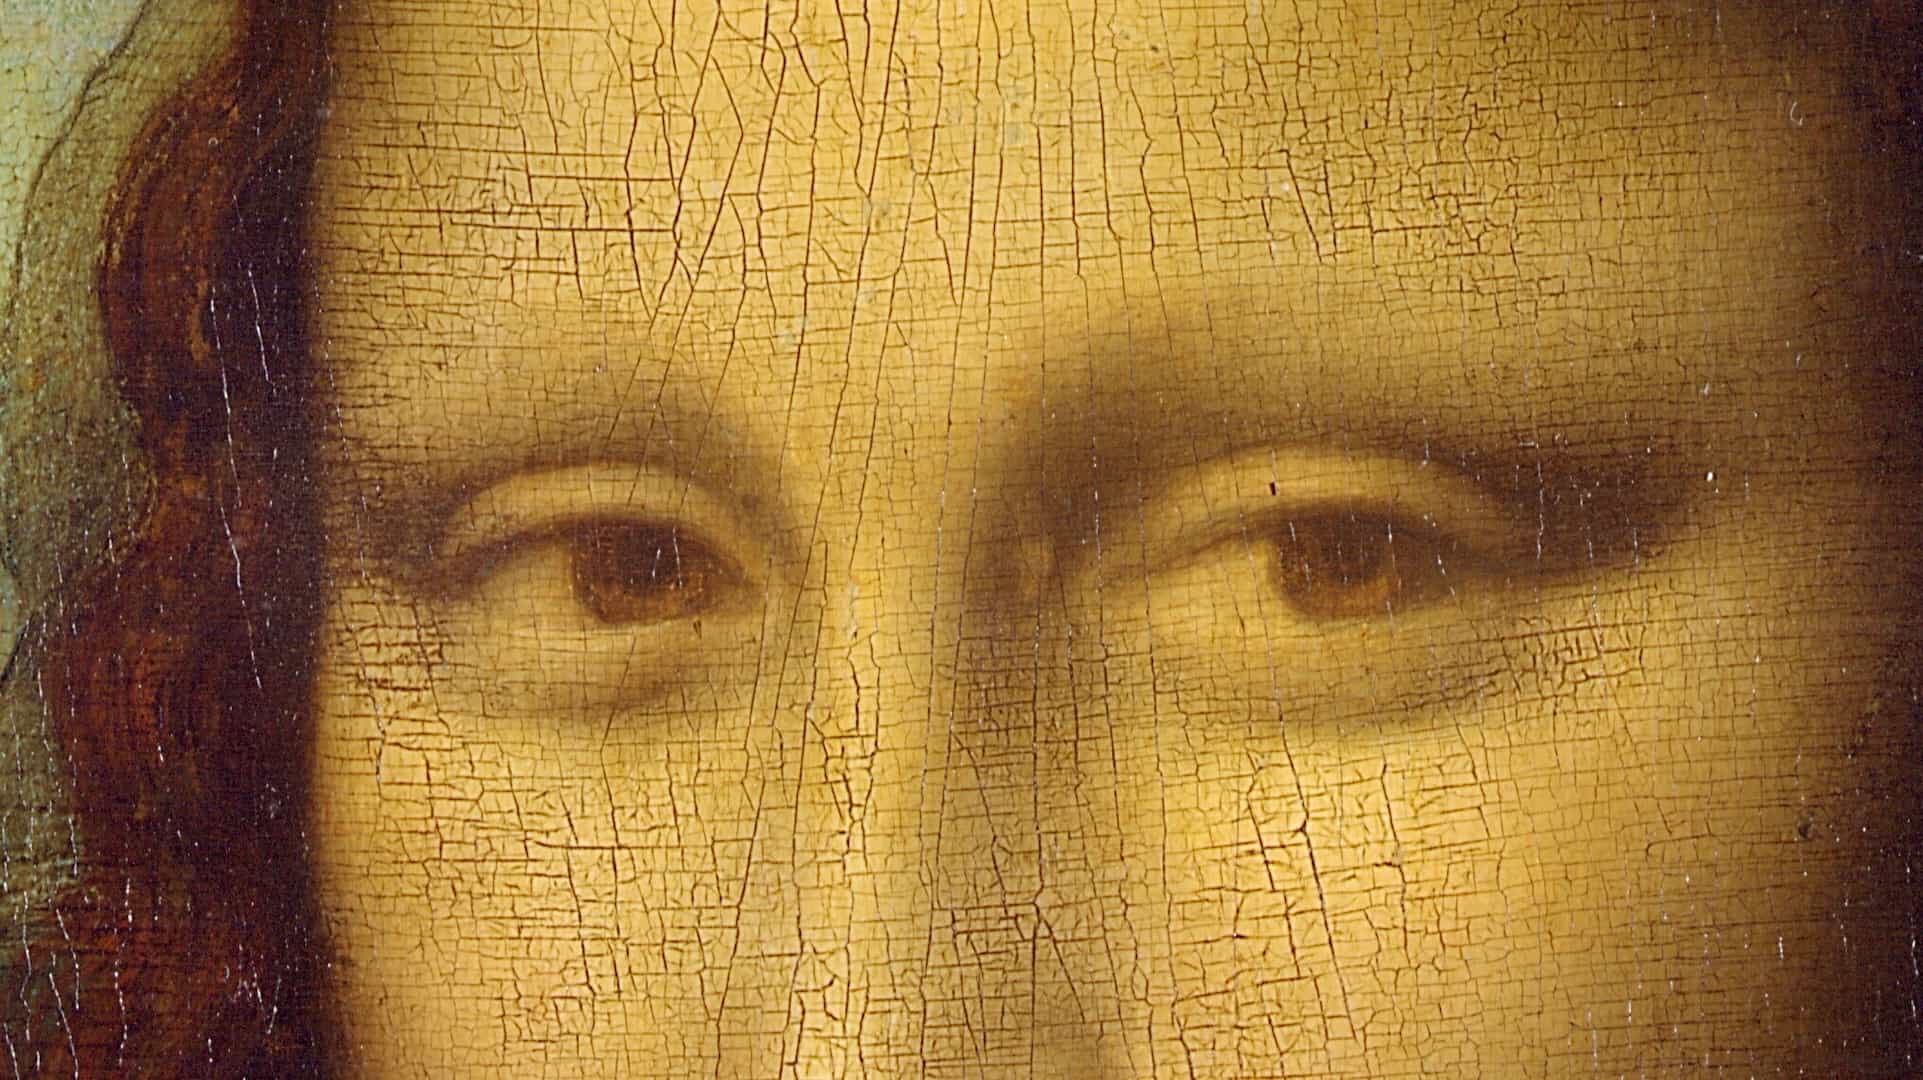 Por supuesto, esa foto viral de la Mona Lisa fue generada por IA